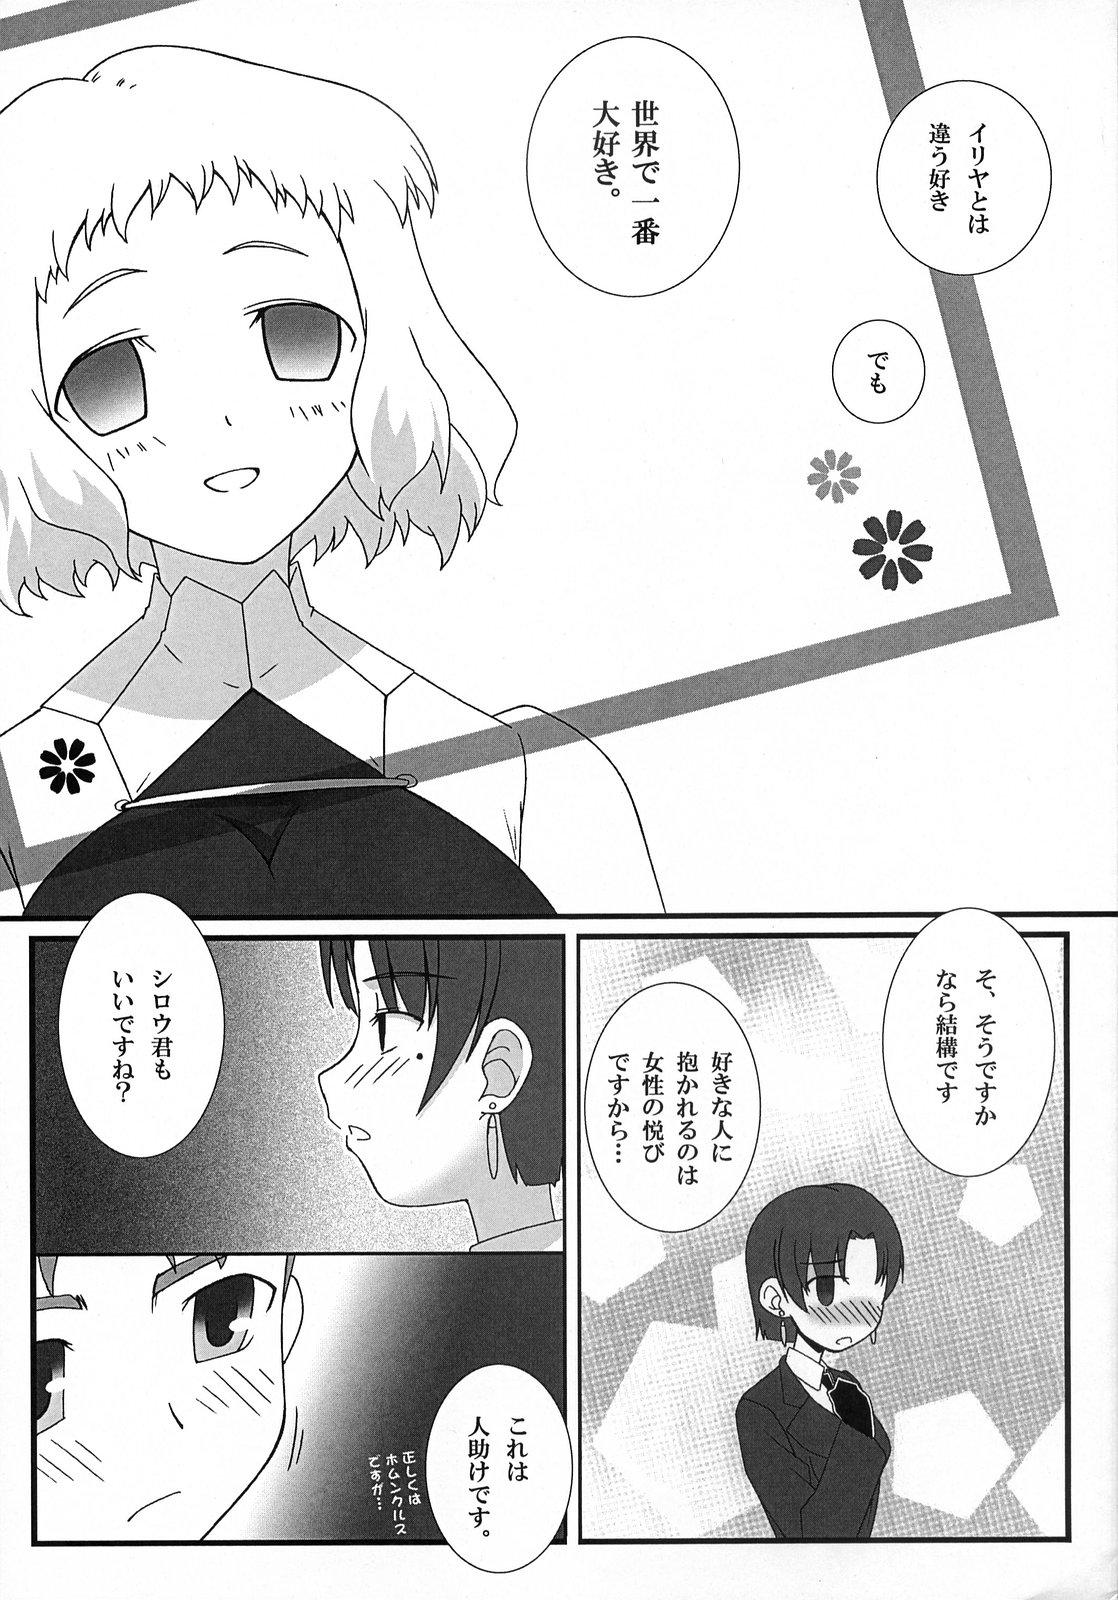 Pica (SC36) [Gachinko Shobou (Koban)] Yappari Leysritt (kyonyuu no hou)] wa eroi na. (Fate/hollow ataraxia) - Fate stay night Fate hollow ataraxia Stepmother - Page 7